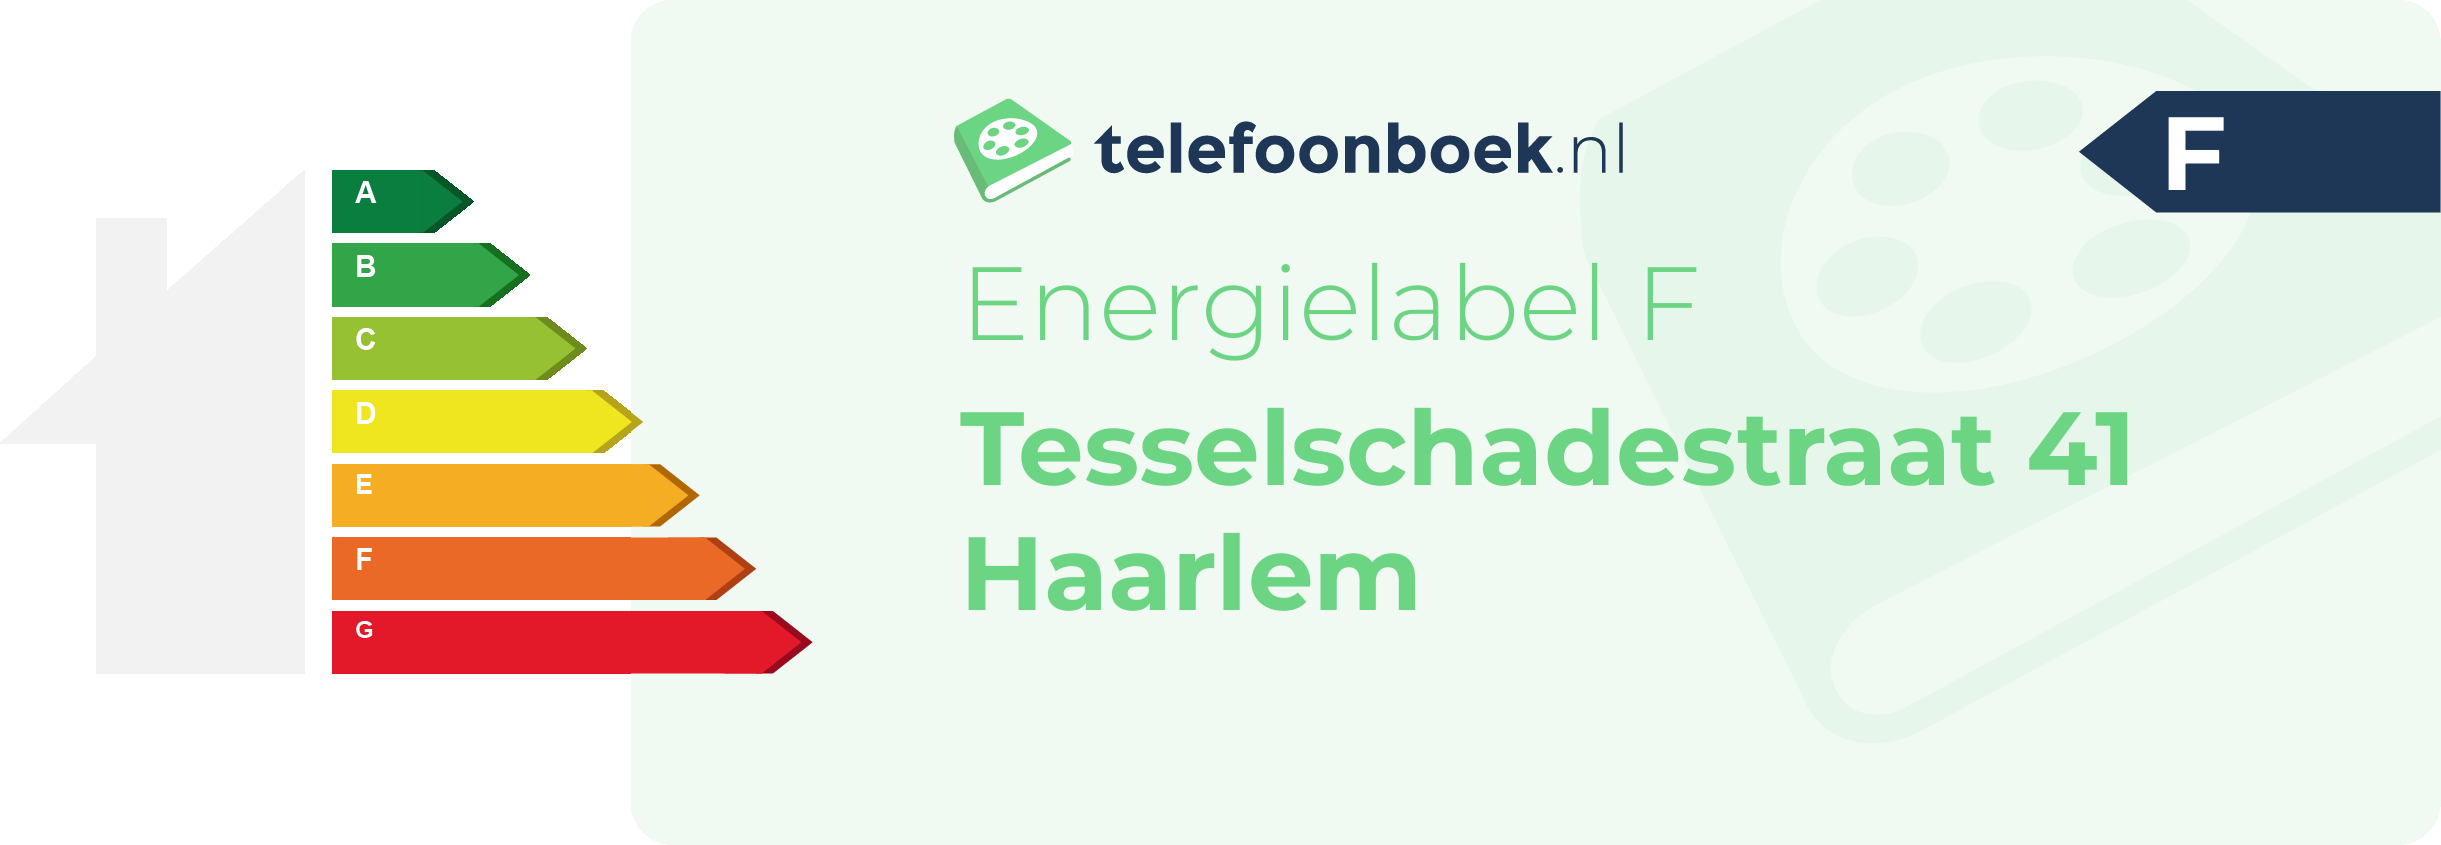 Energielabel Tesselschadestraat 41 Haarlem